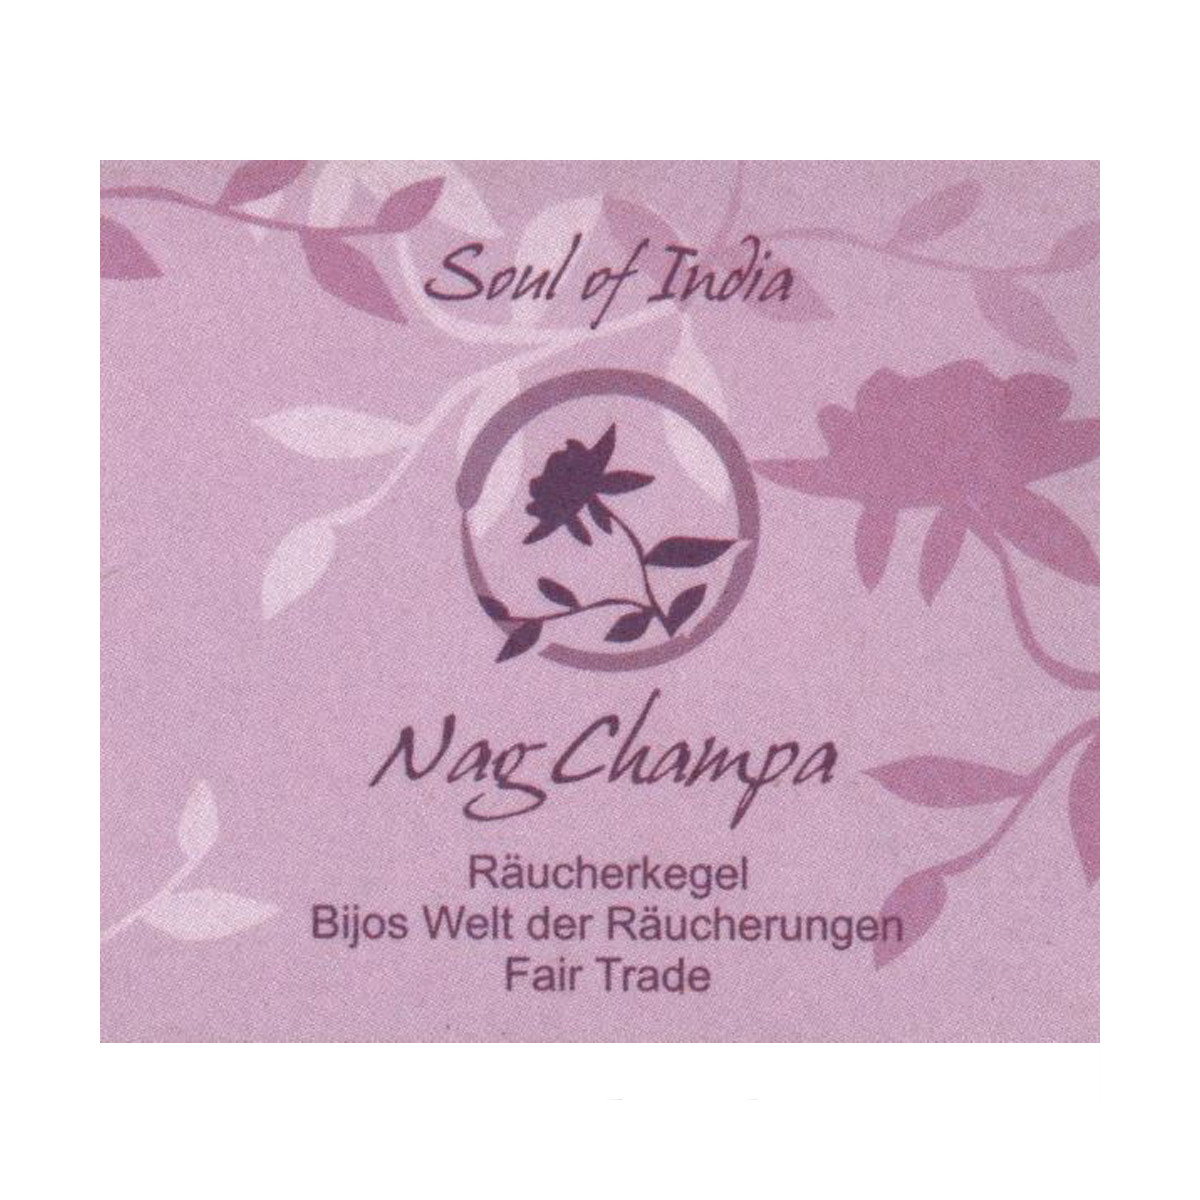 Nag Champa - Soul of India - FAIR TRADE Räucherkegel